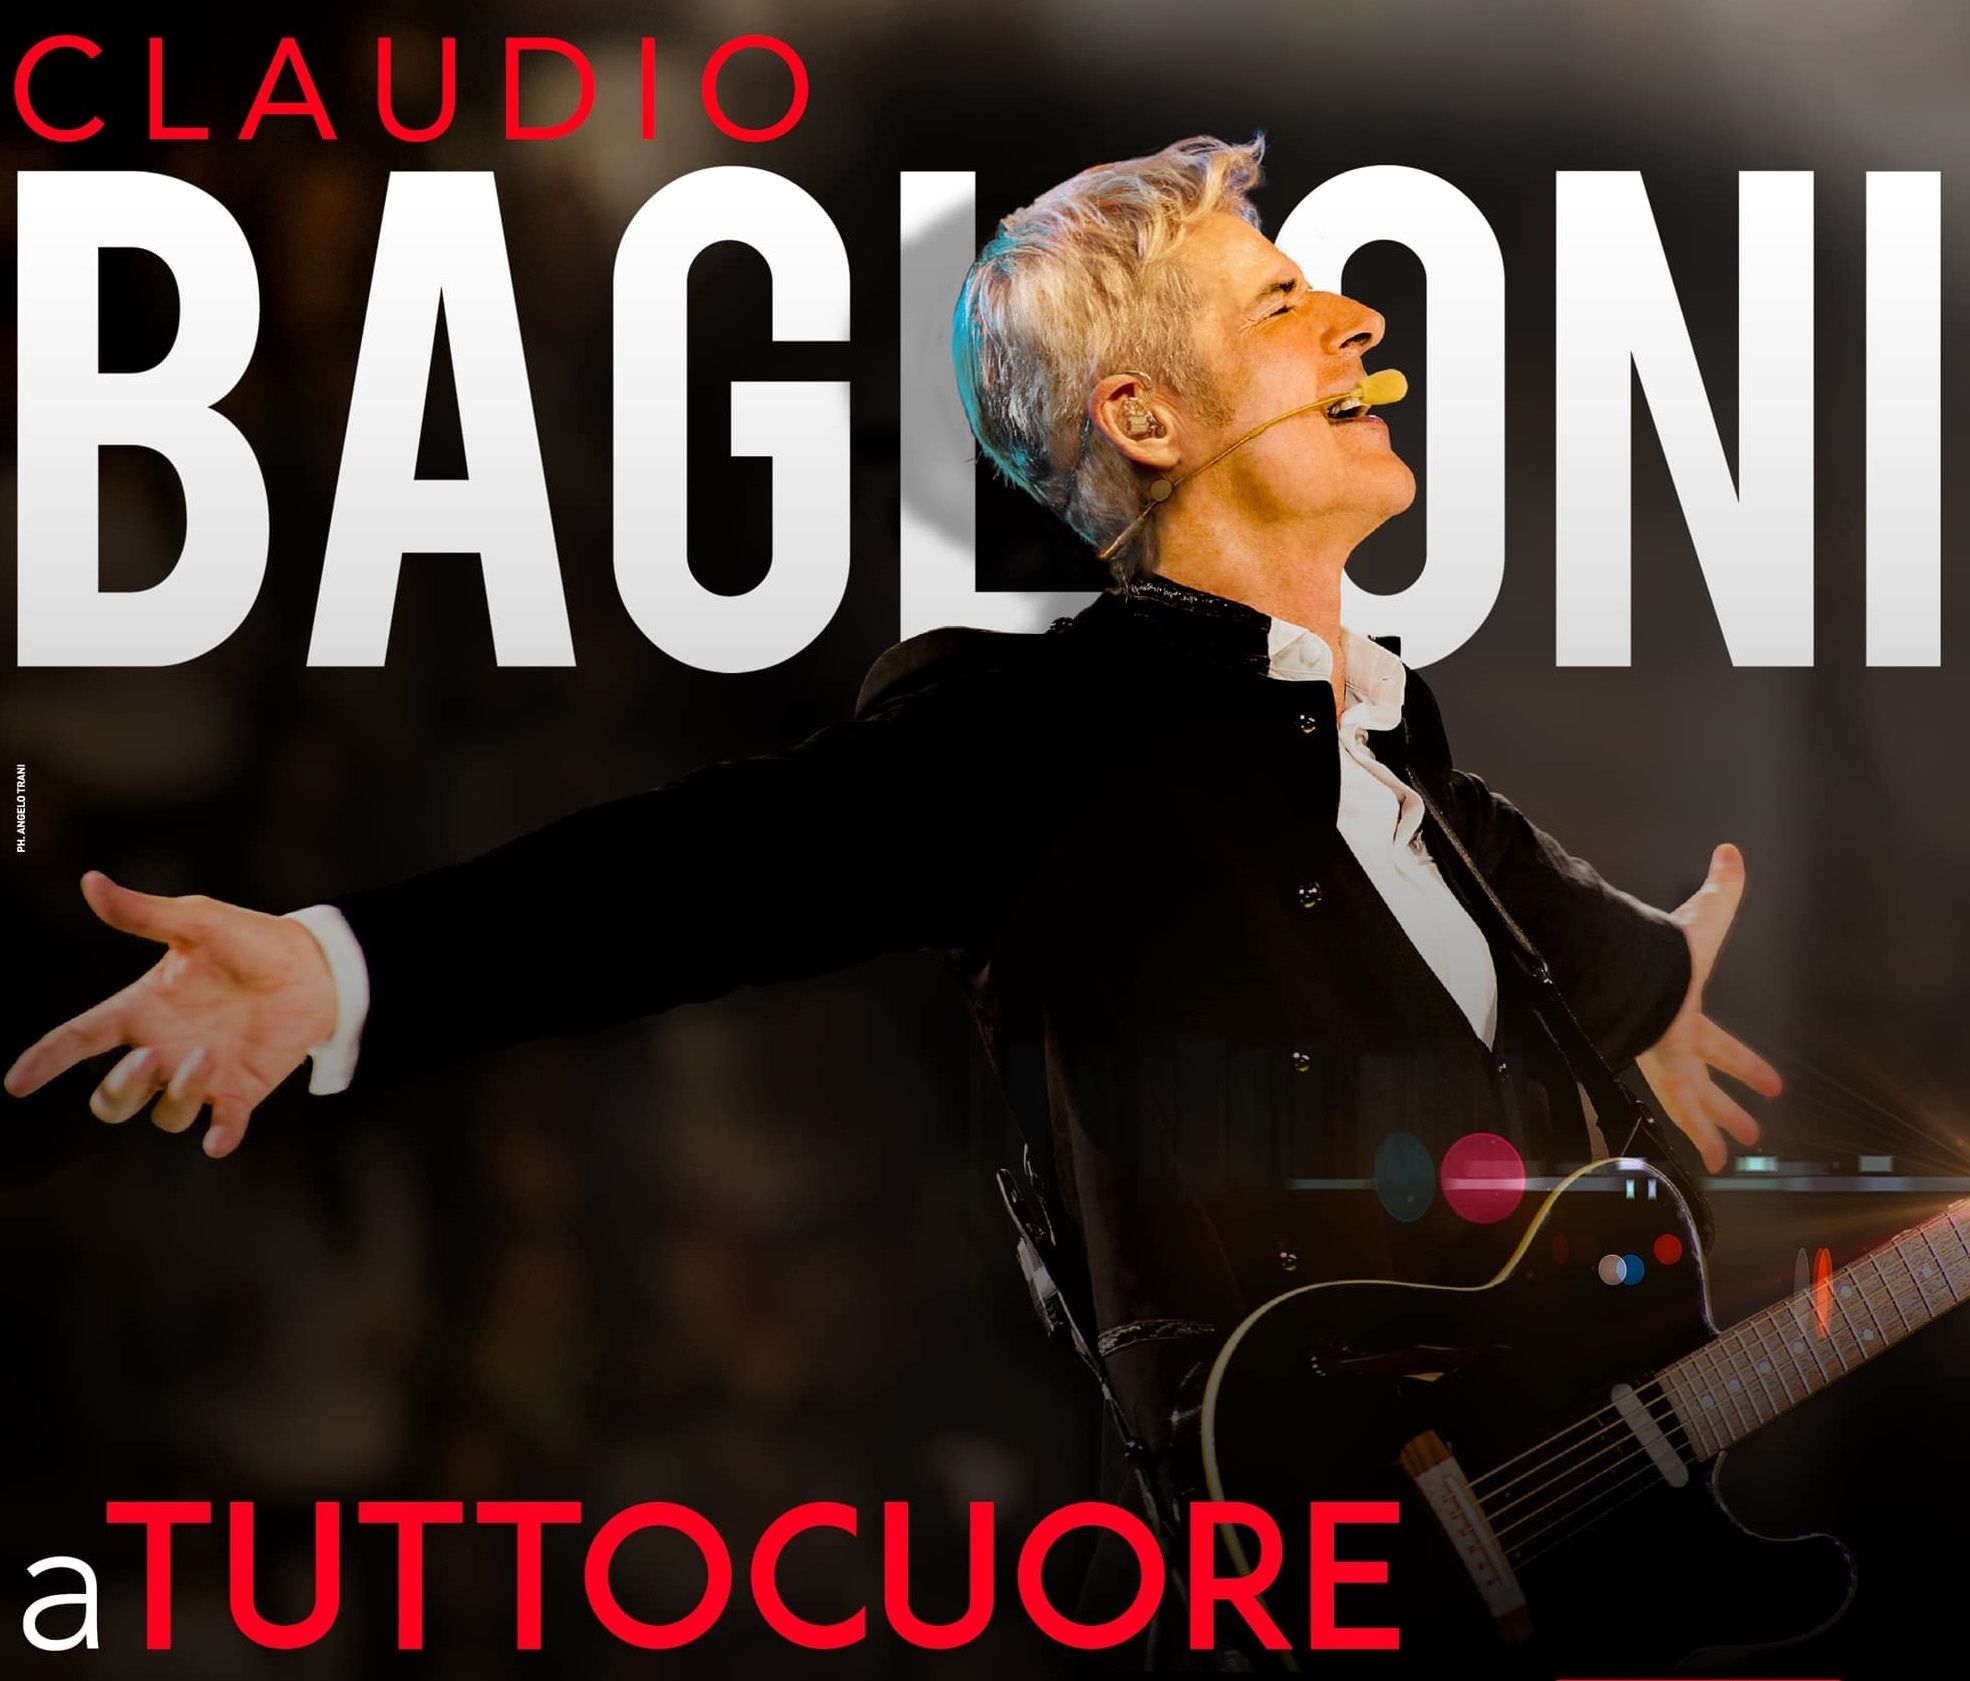 Claudio Baglioni – aTUTTOCUORE